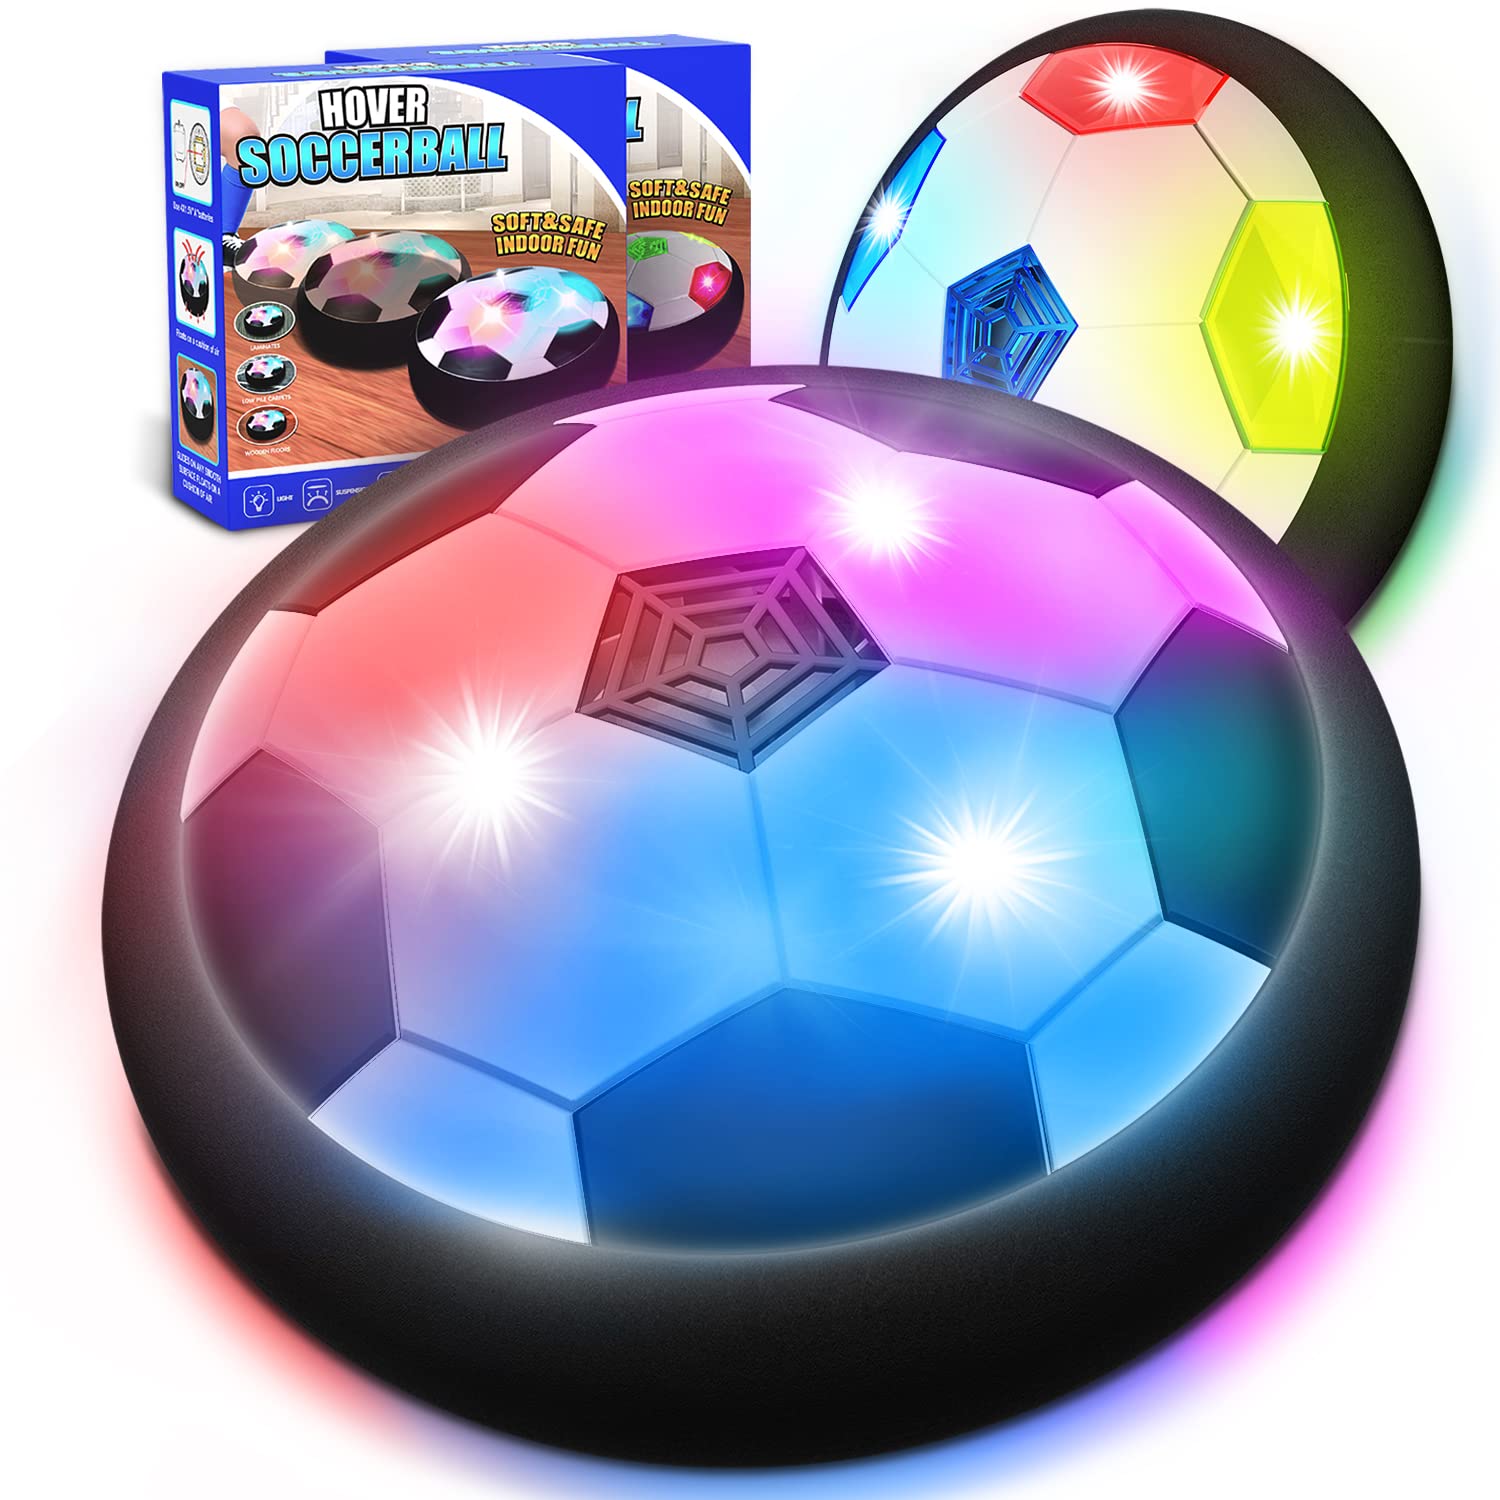 KKONES Kids Toys Hover Soccer Ball